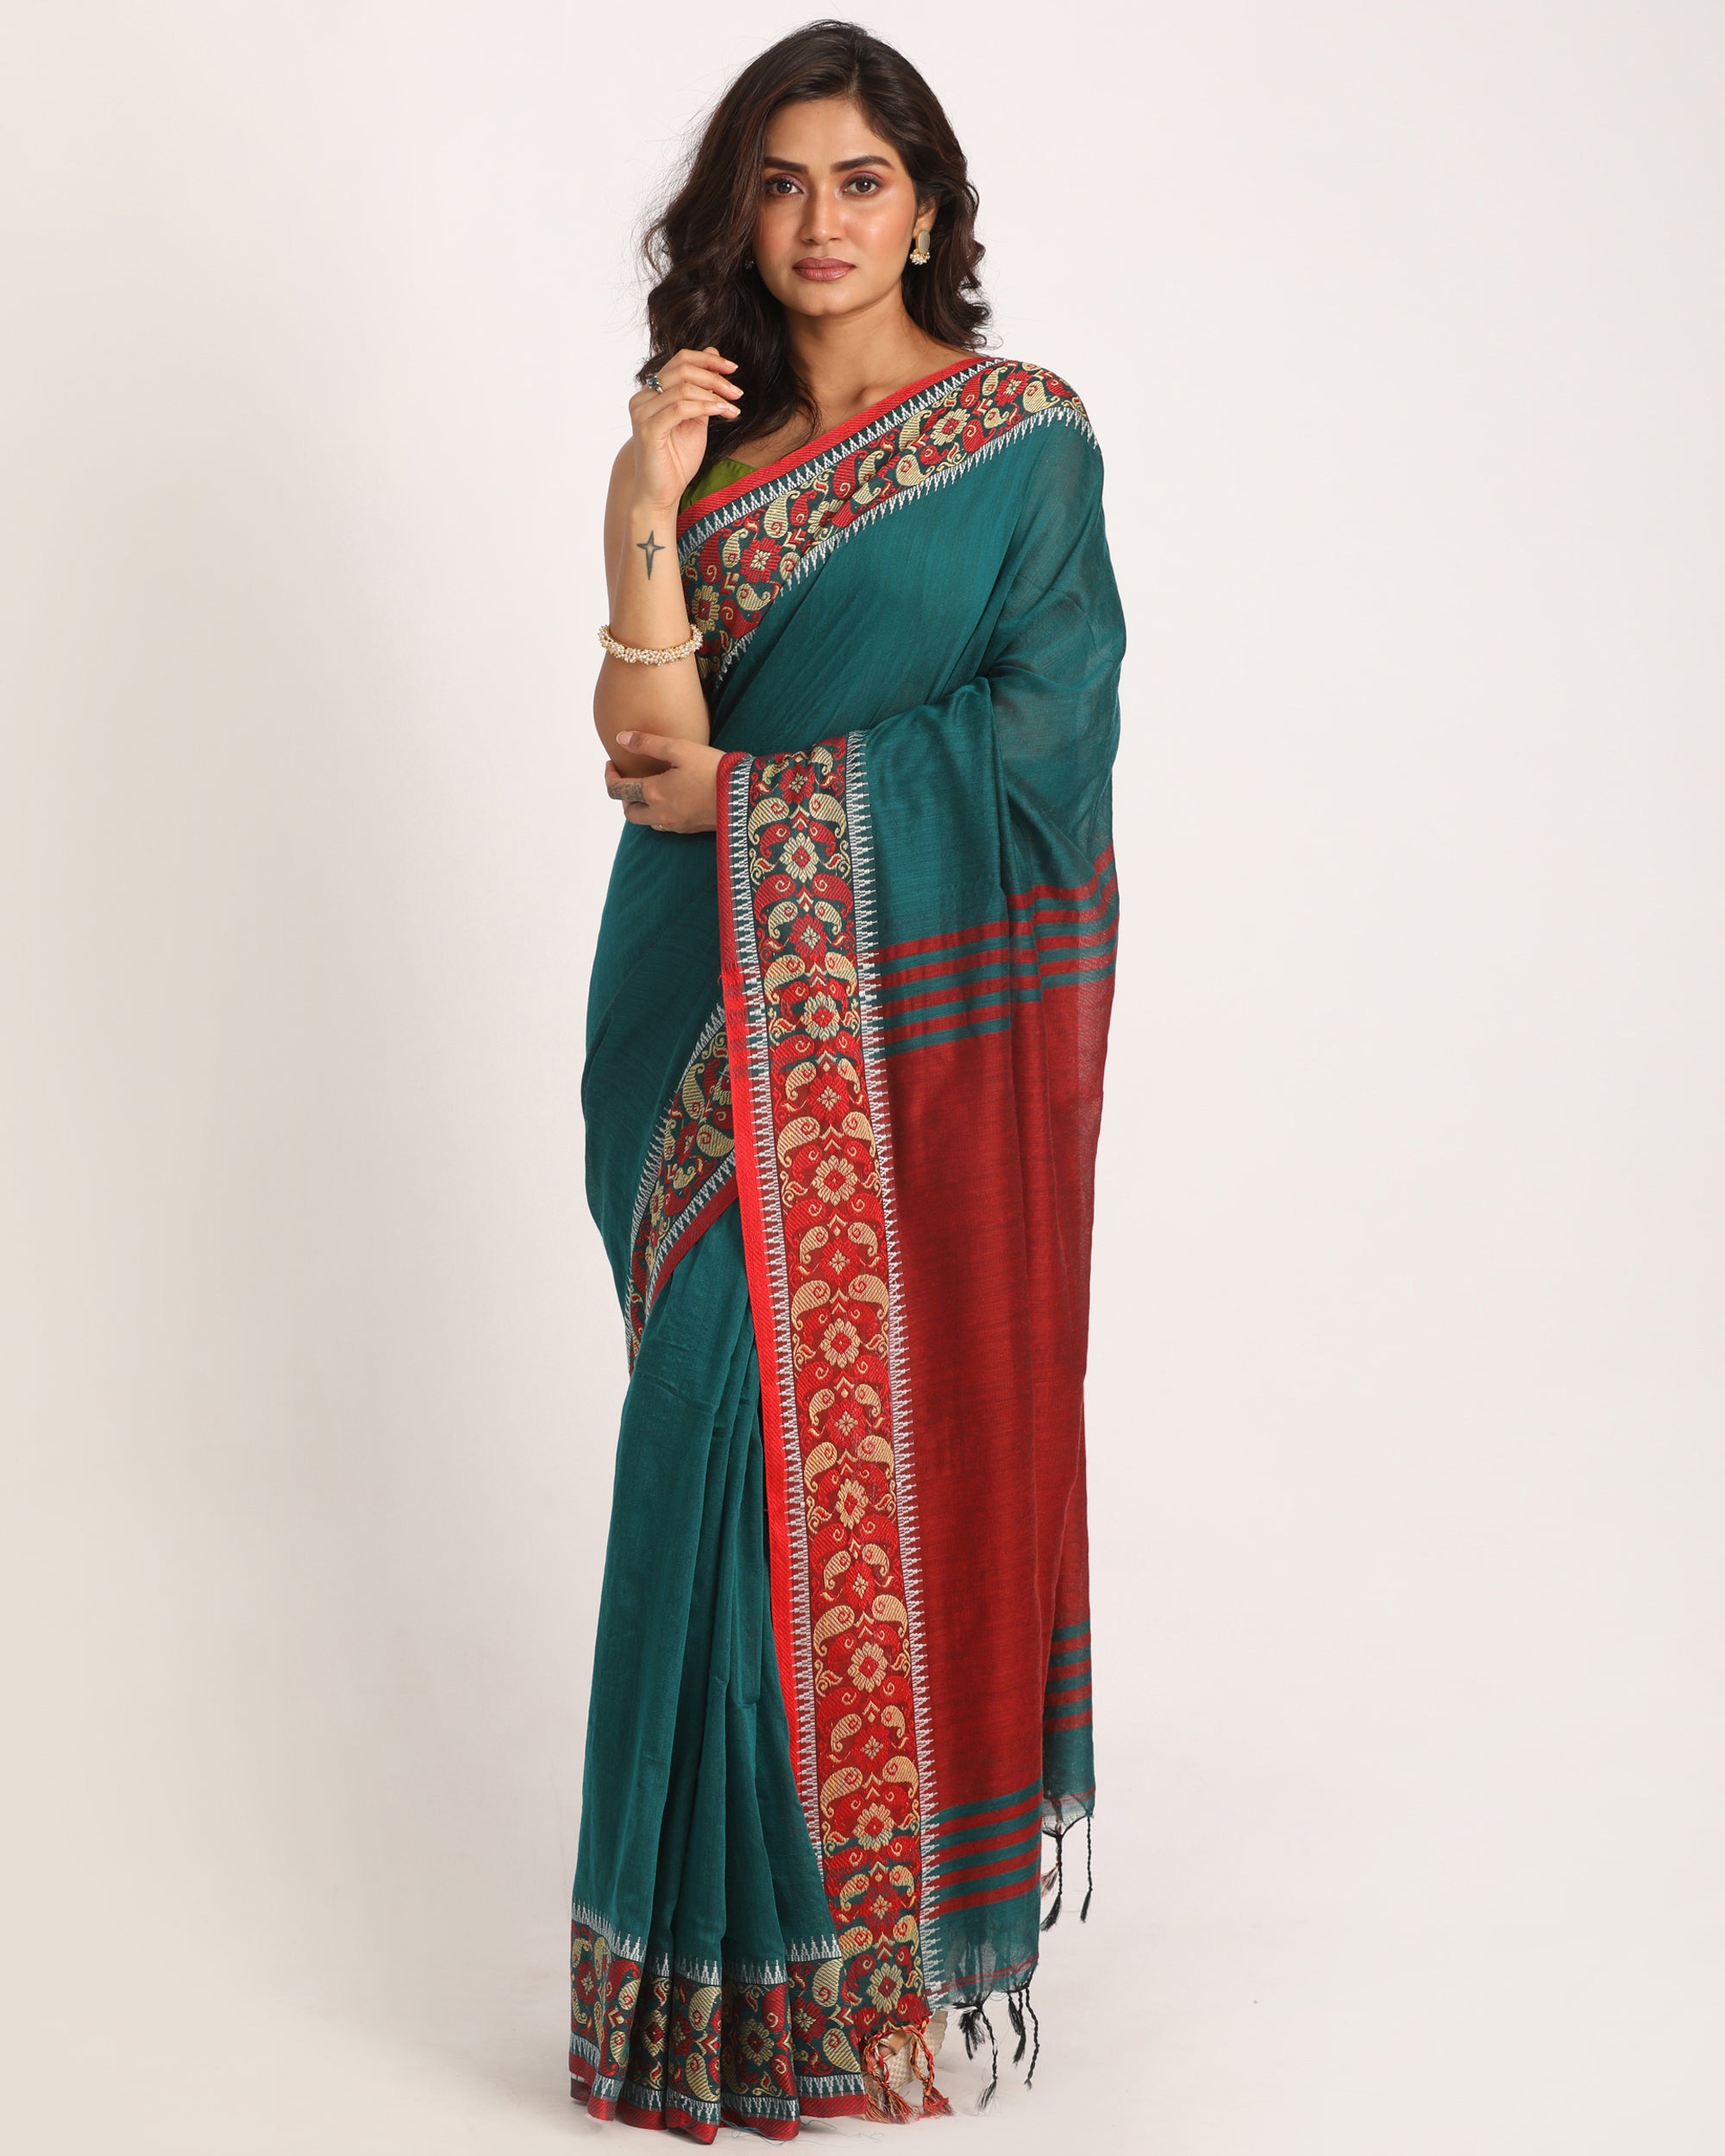 Women's Deep Teal Handloom Handspun Cotton Saree - Piyari Fashion